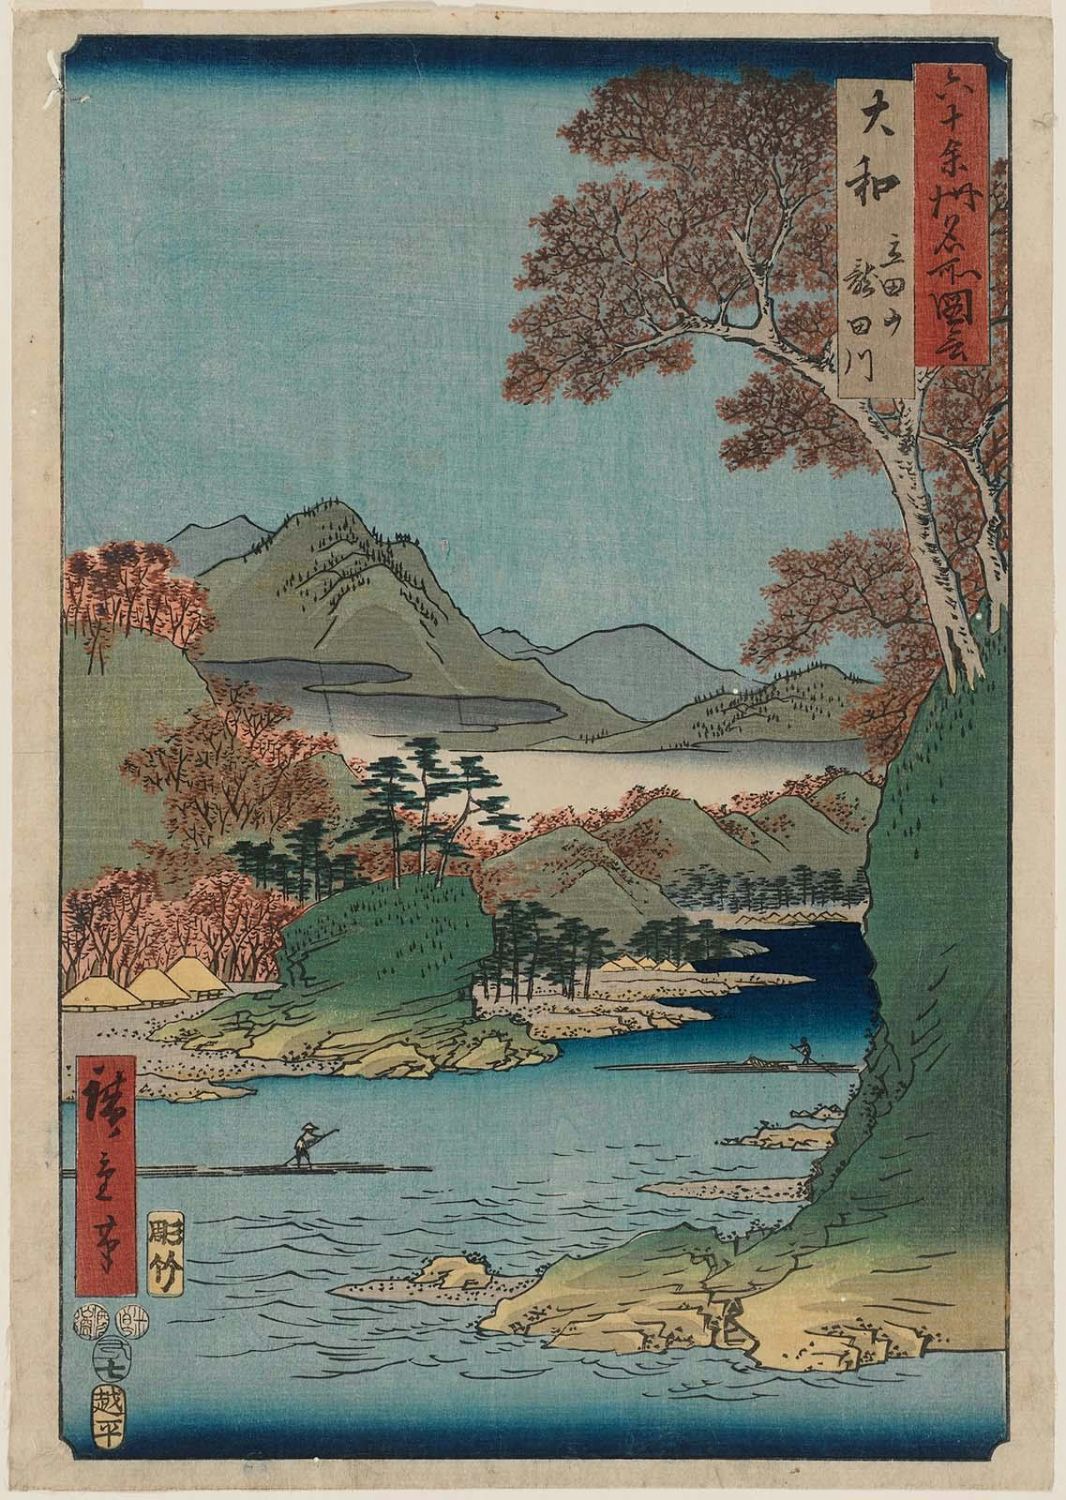 Utagawa Hiroshige: Yamato Province: Tatsuta Mountain and Tatsuta 